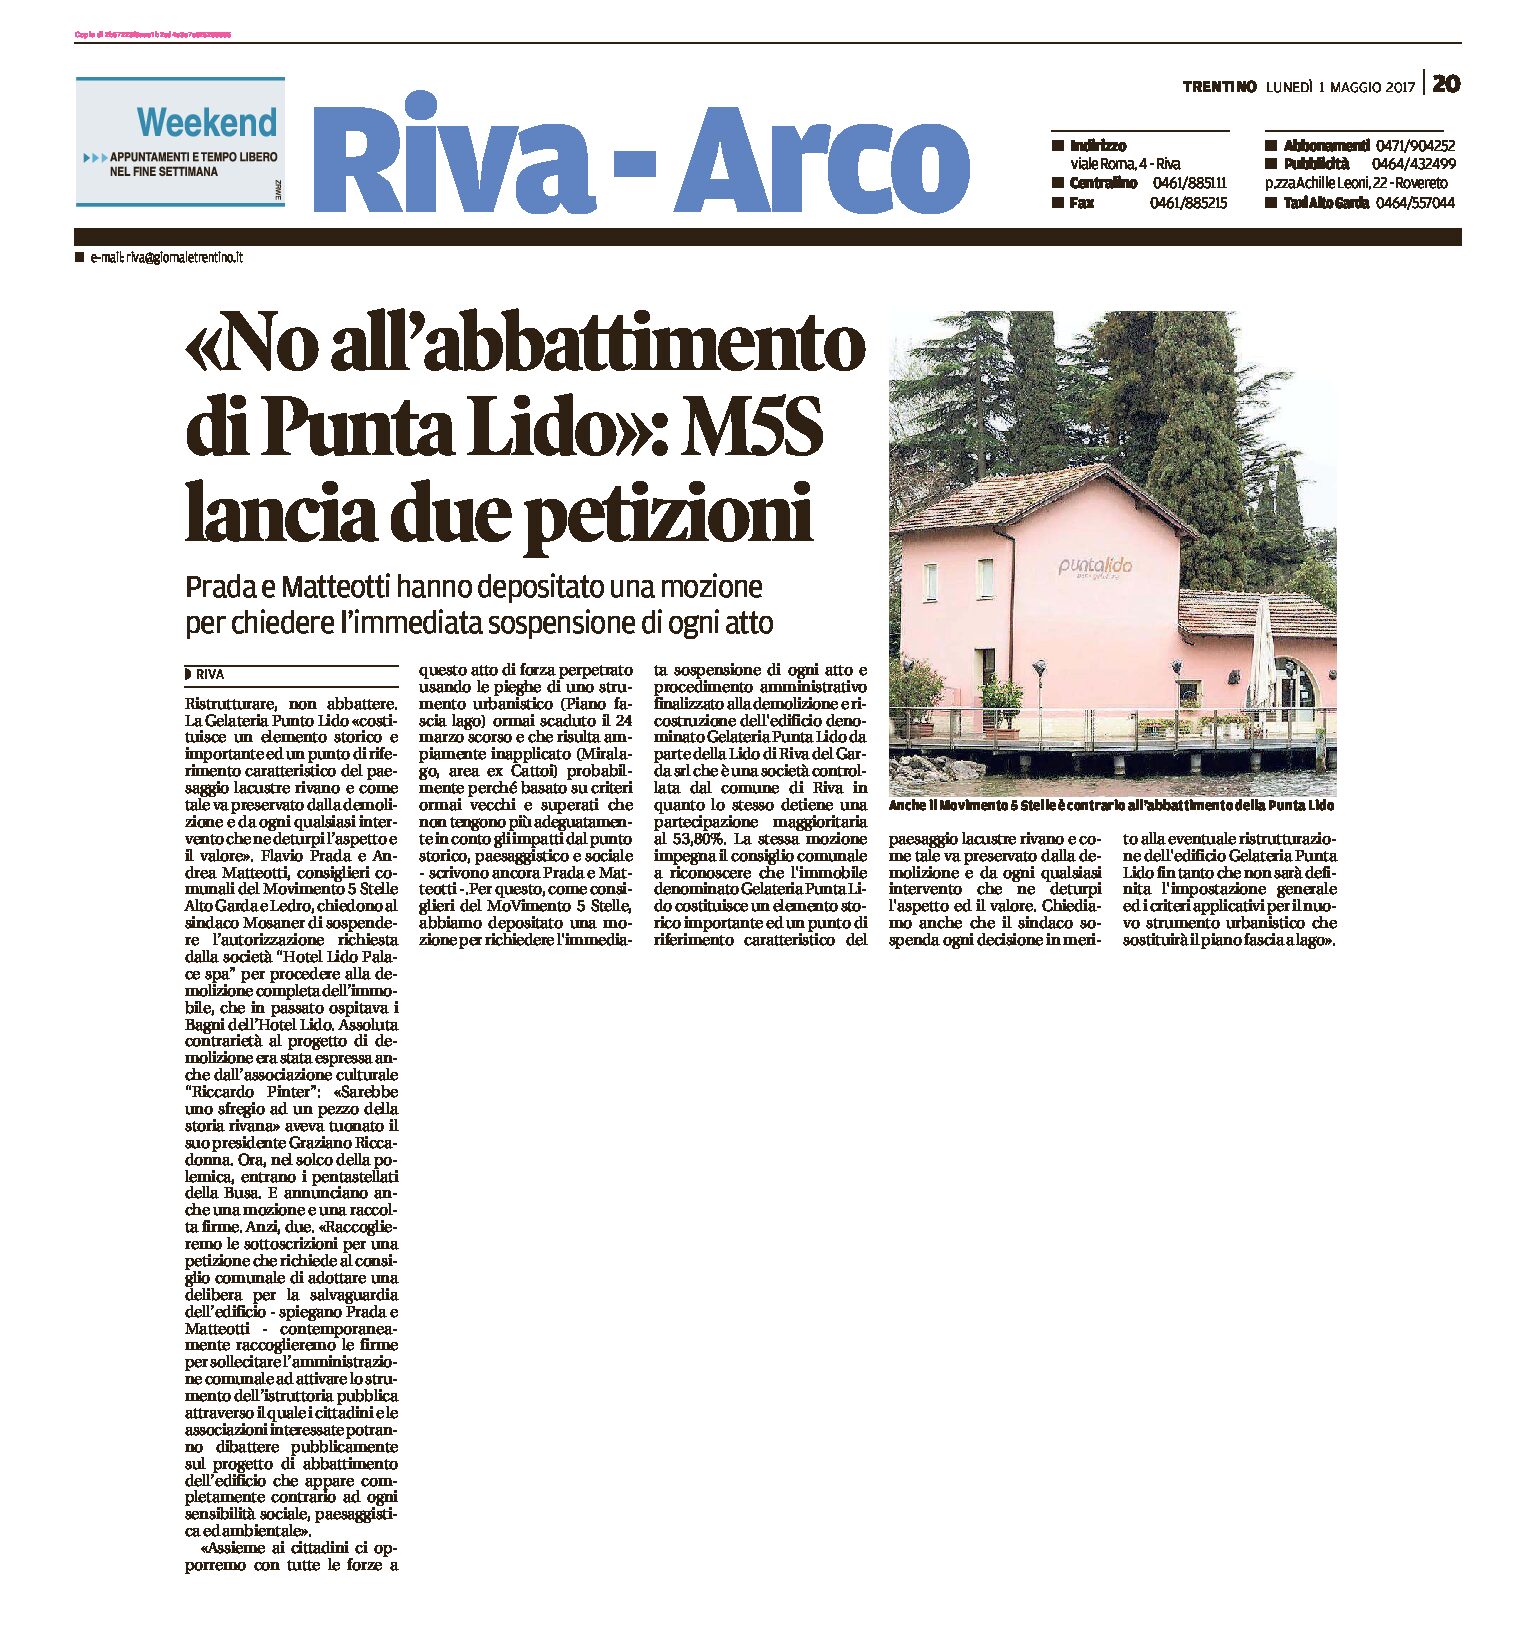 Riva, Punta Lido: “no all’abbattimento”. M5S lancia due petizioni